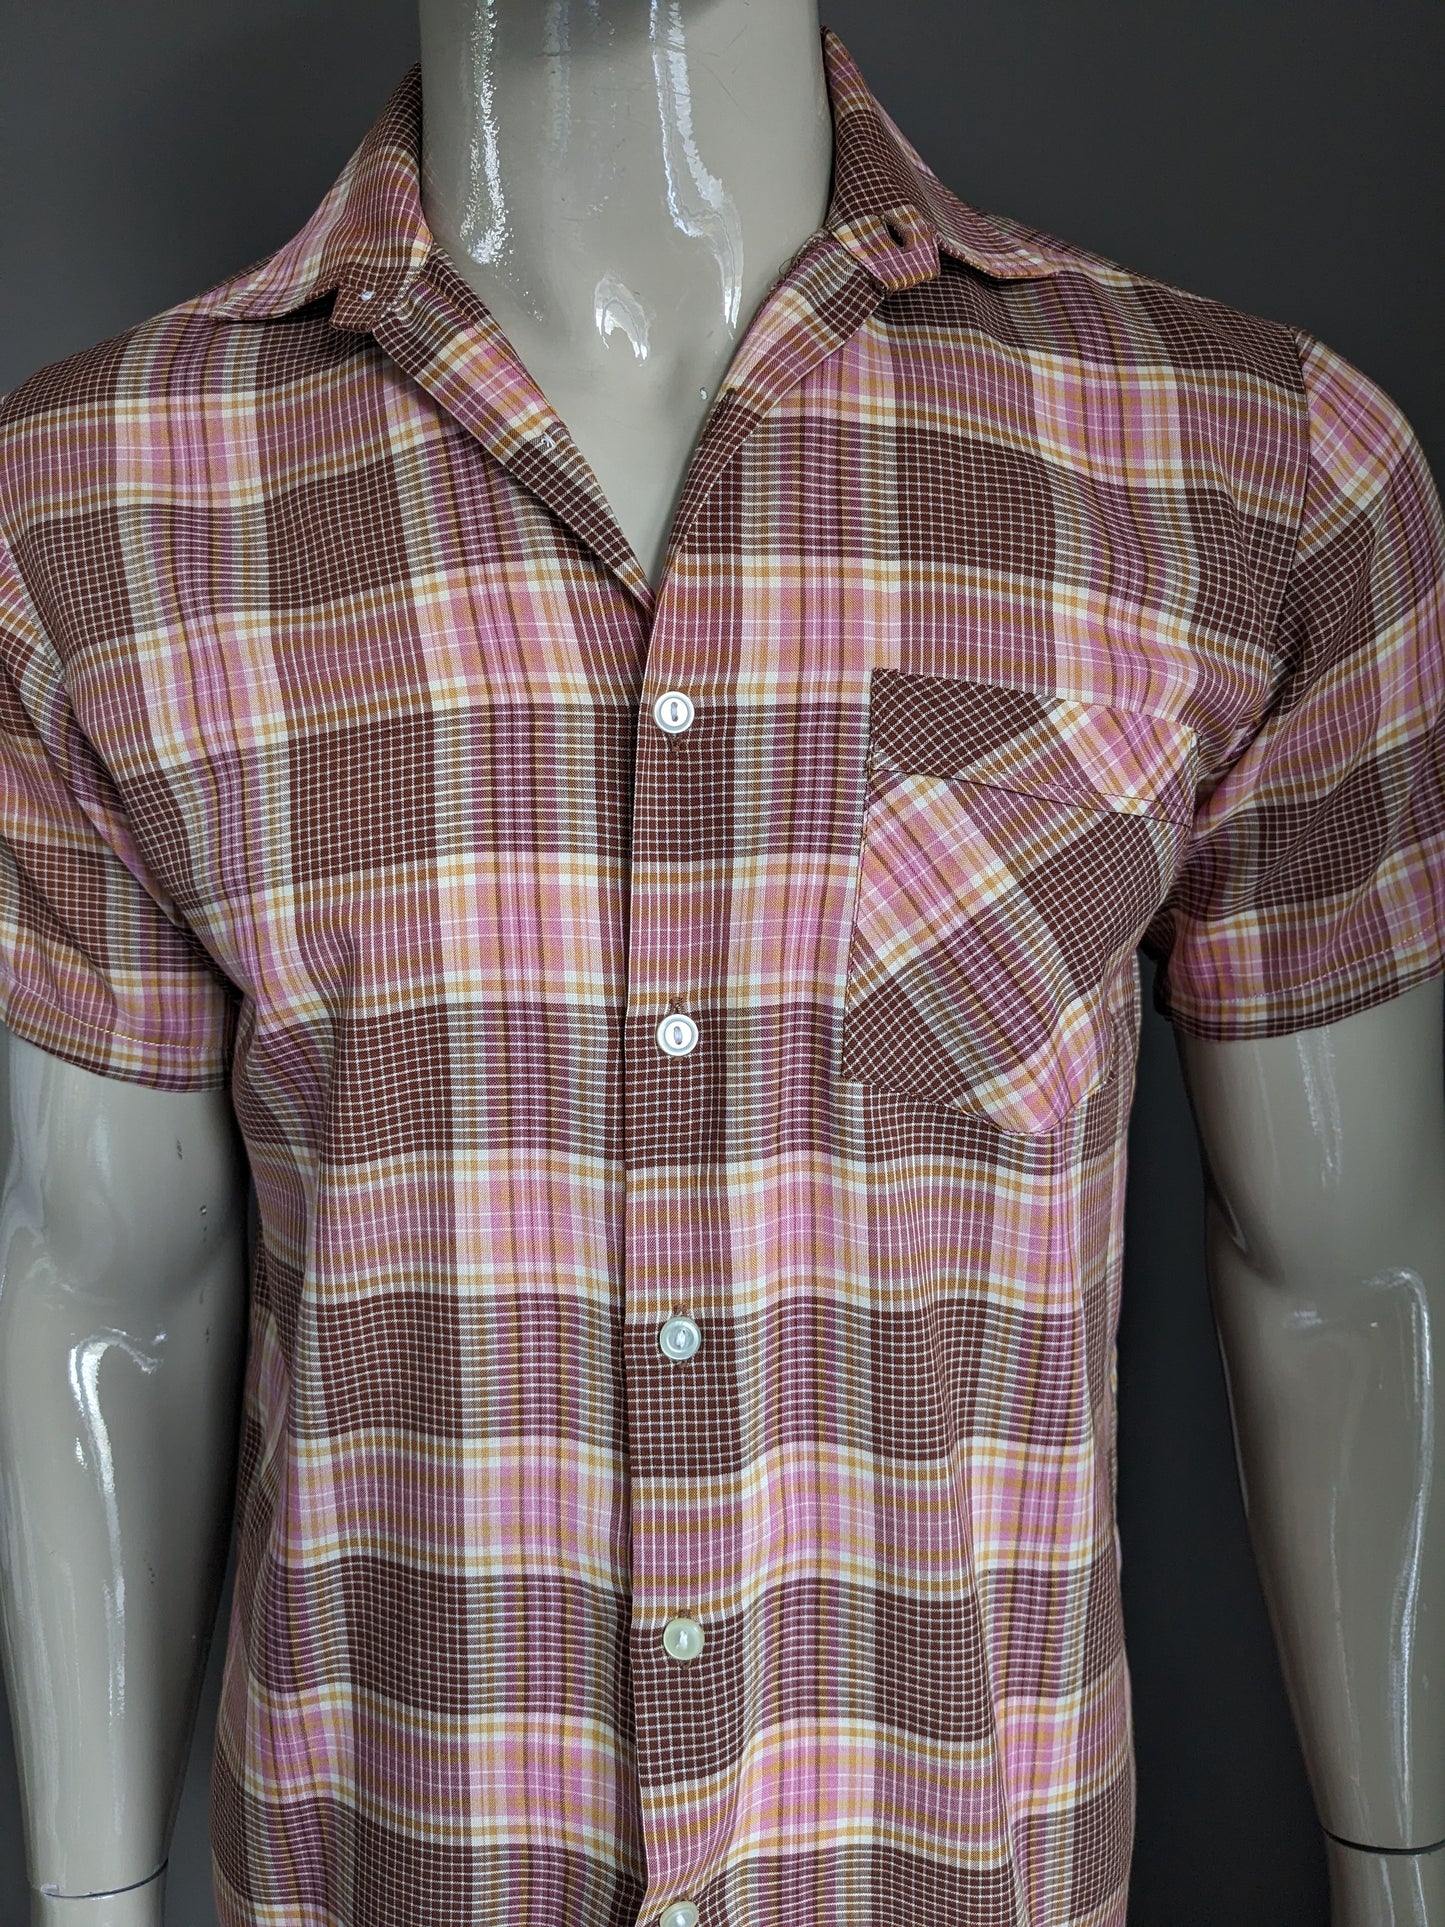 Vintage Fekon 70's overhemd korte mouw. Roze Bruin Geel geruit. Maat M.